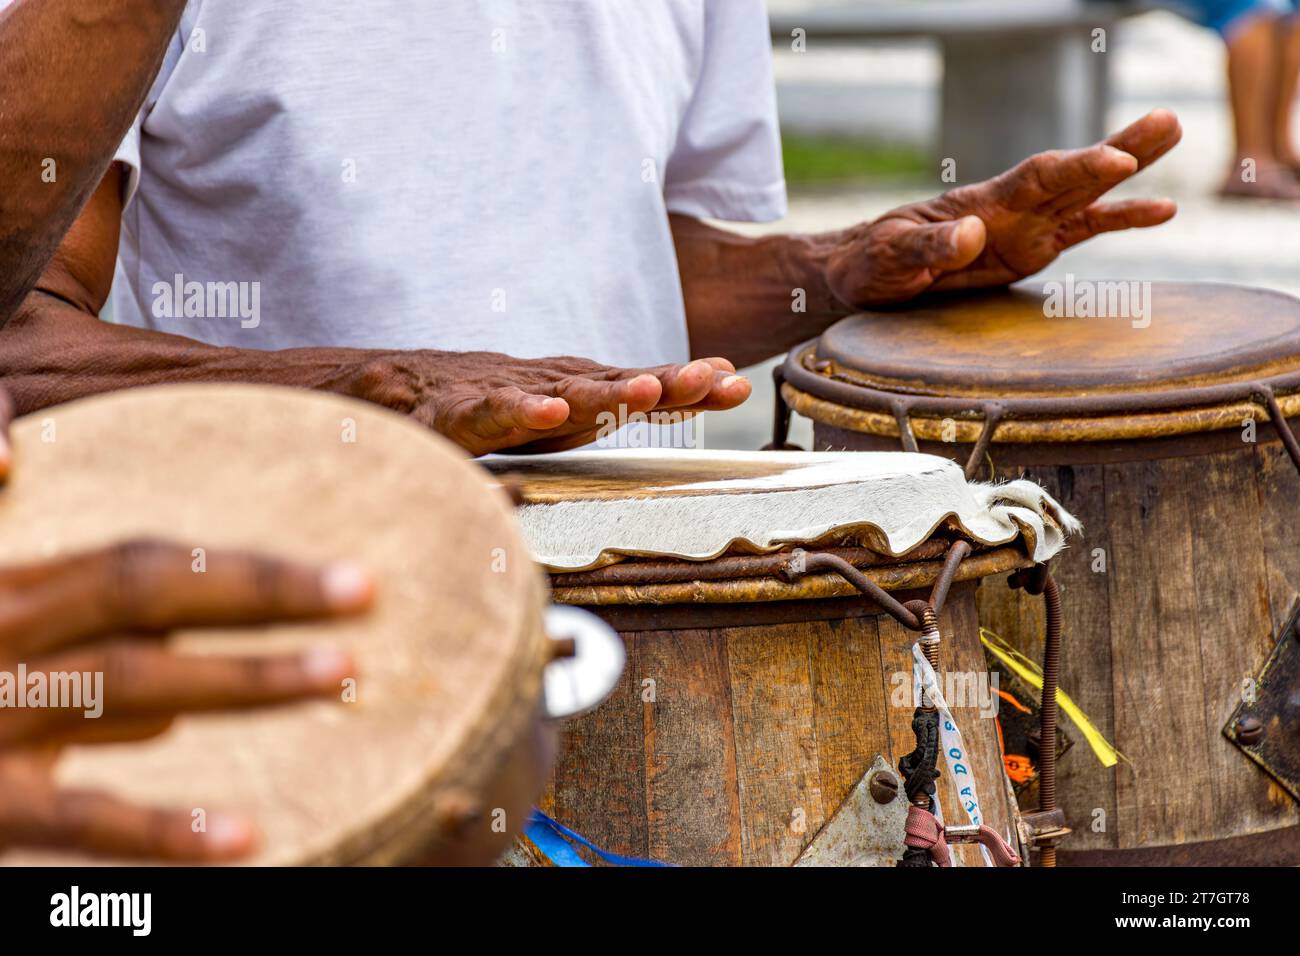 Percussionnistes jouant de leurs instruments lors d'un spectacle de capoeira sur une place Pelourinho dans la ville de Salvador, Bahia, Brésil Banque D'Images